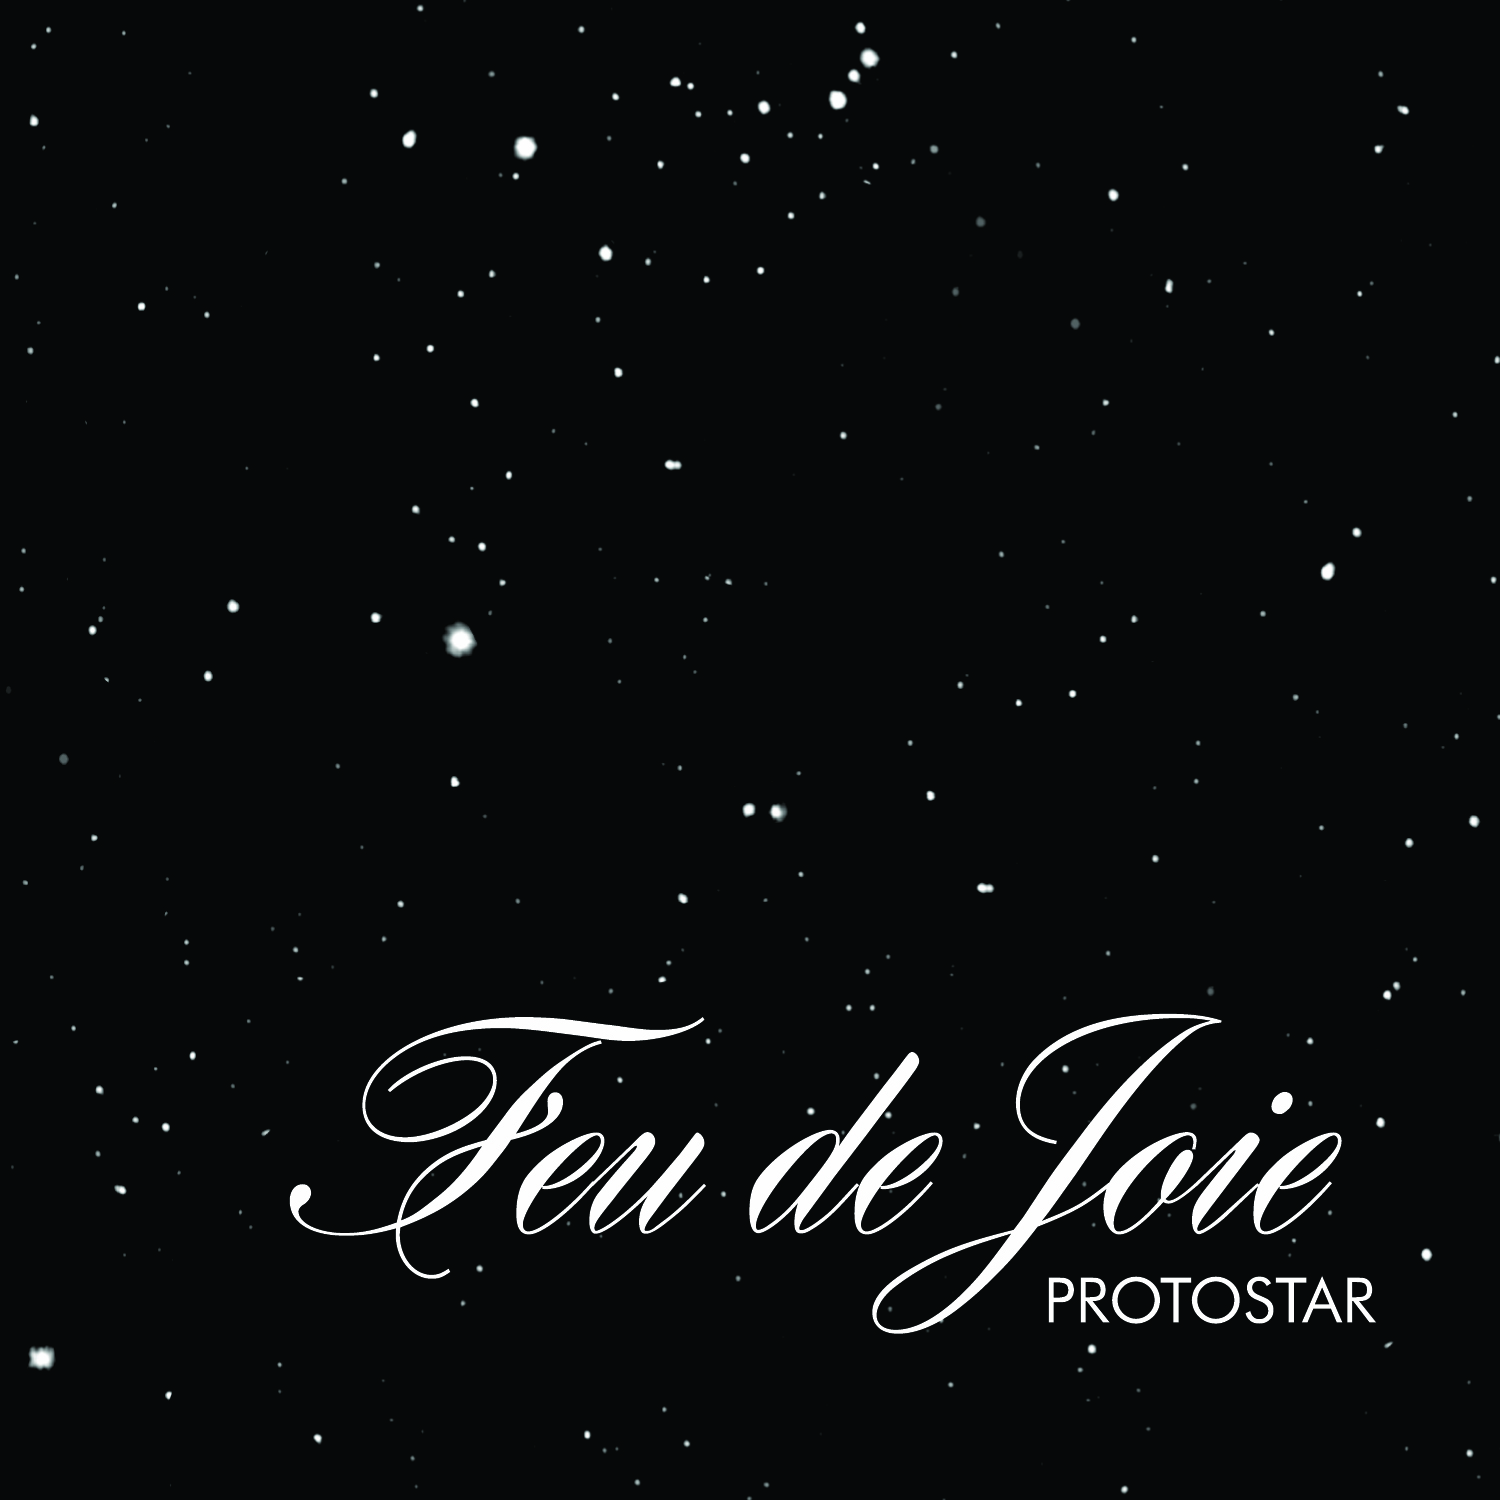 Feu De Joie: Protostar (9-Songs) 2006